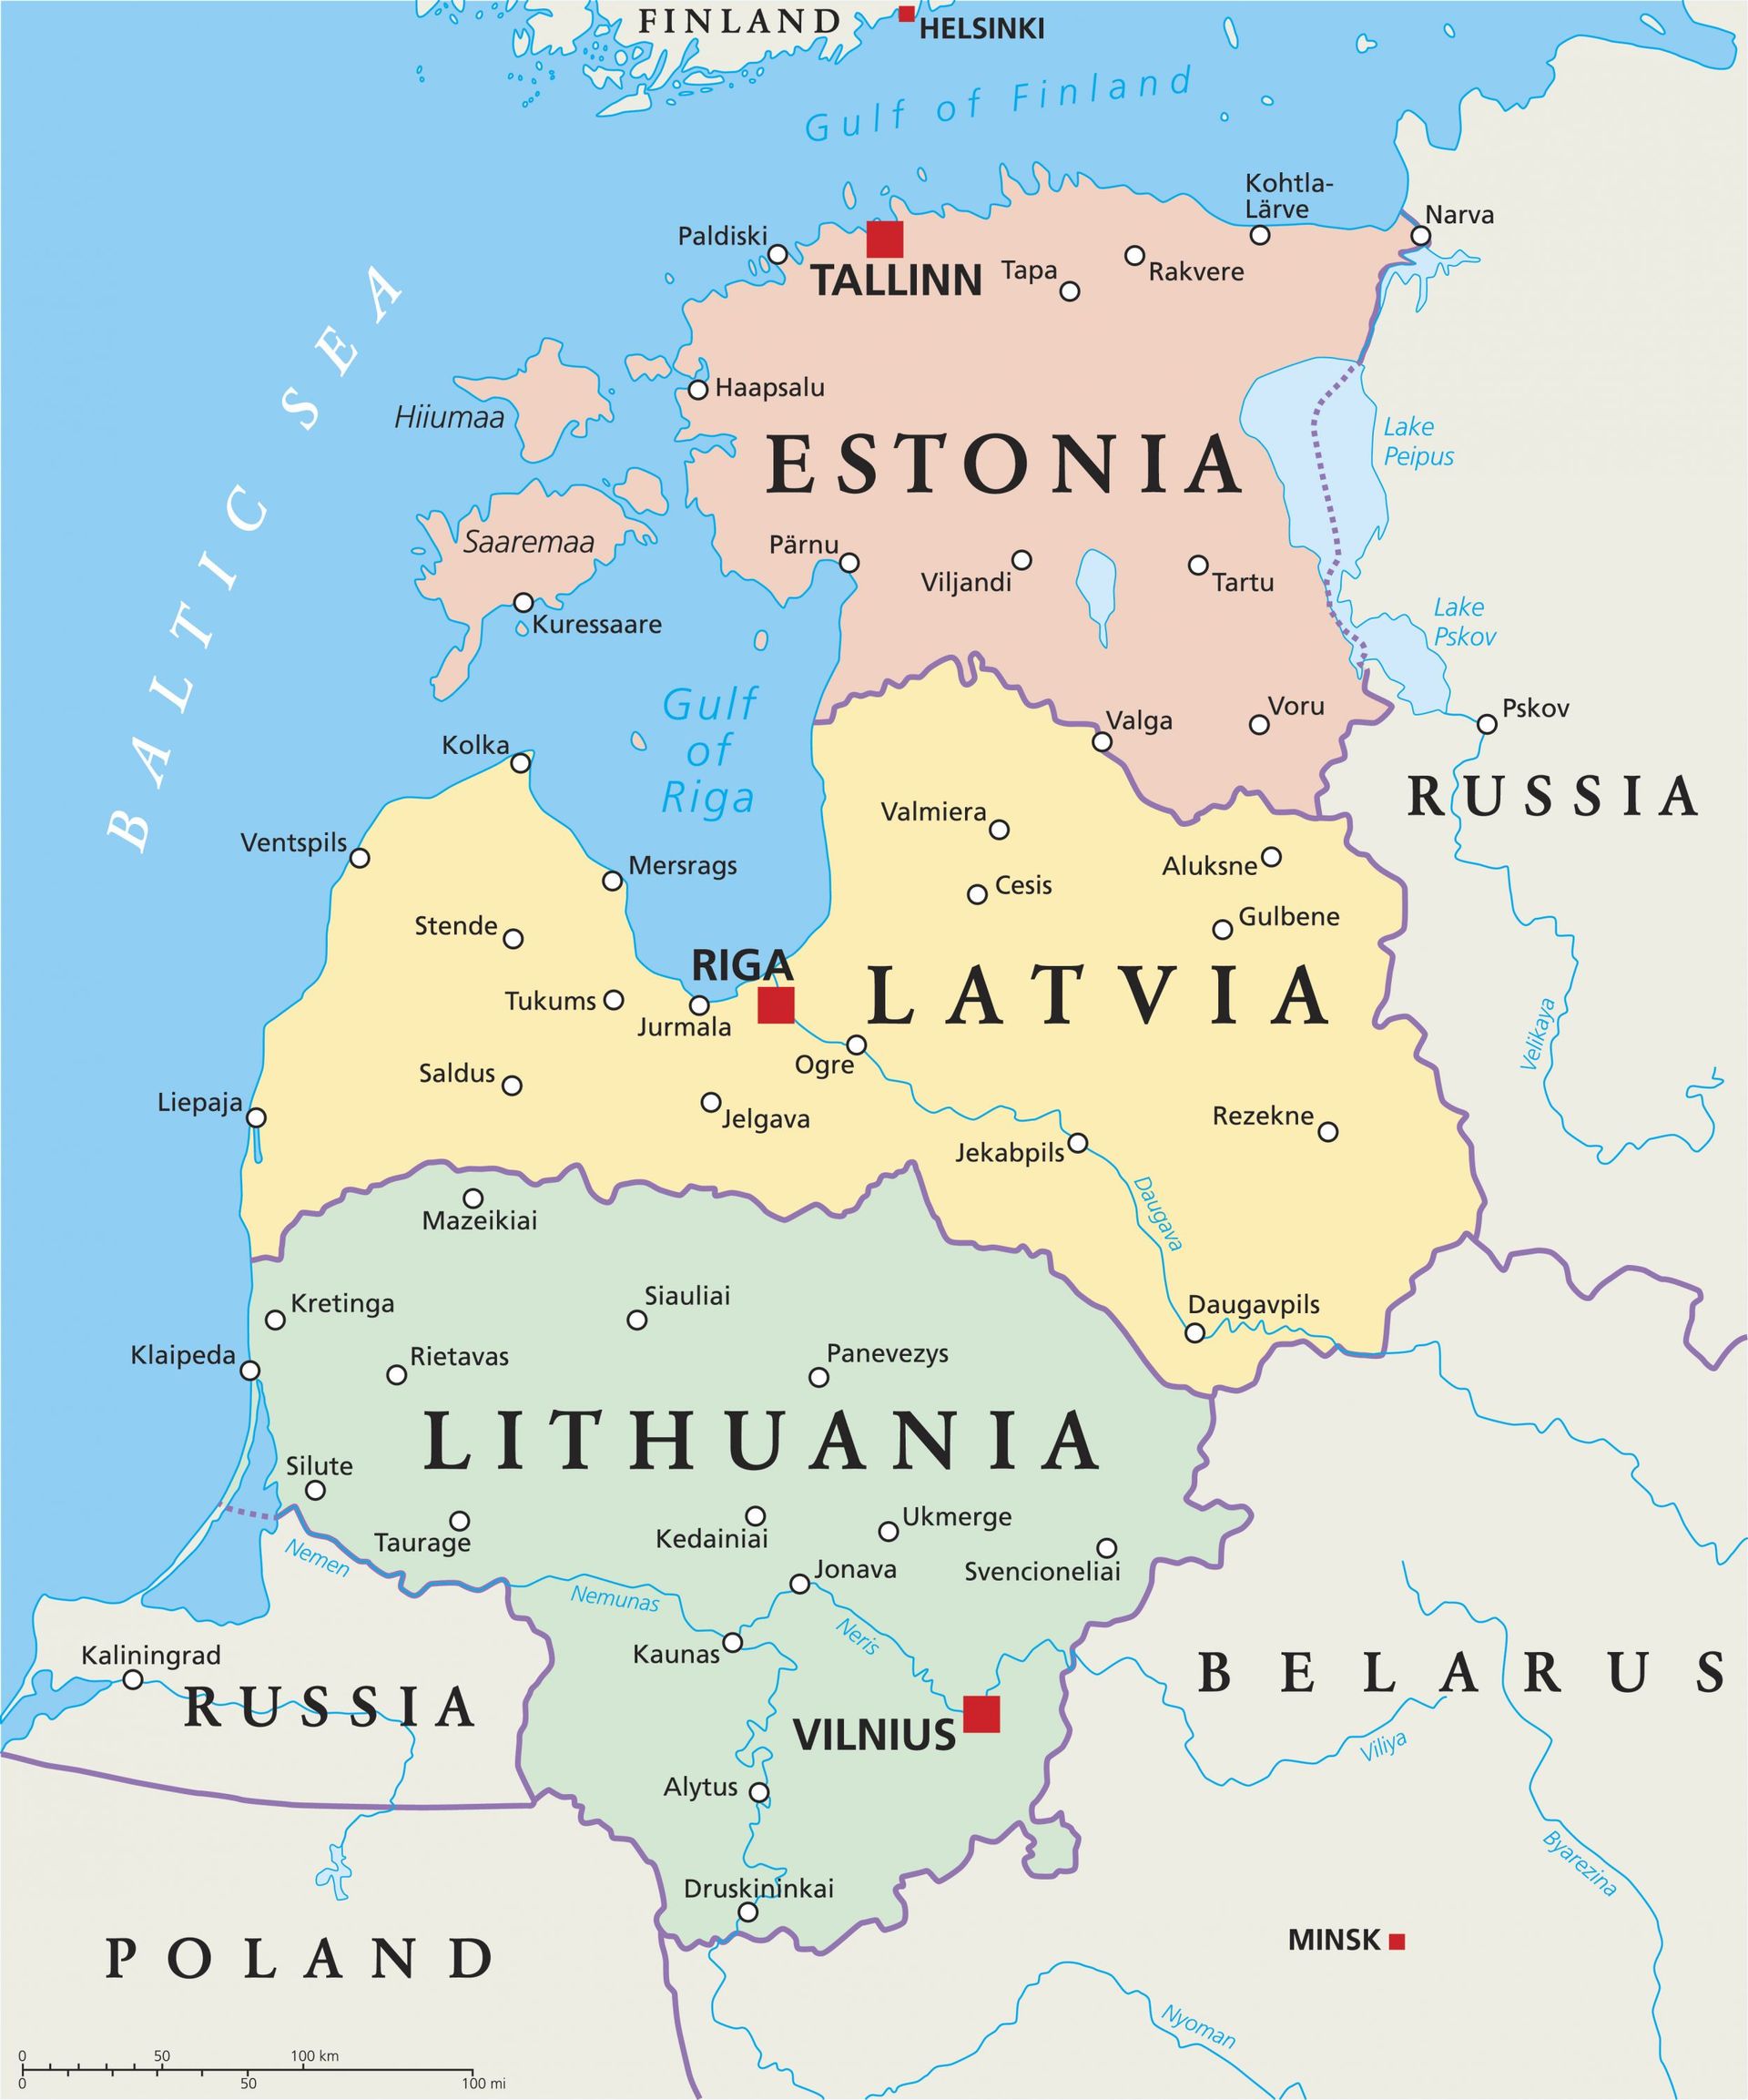 Pays baltes. Au sud de la Lituanie, on peut voir "le corridor de Suwalki", zone frontalière